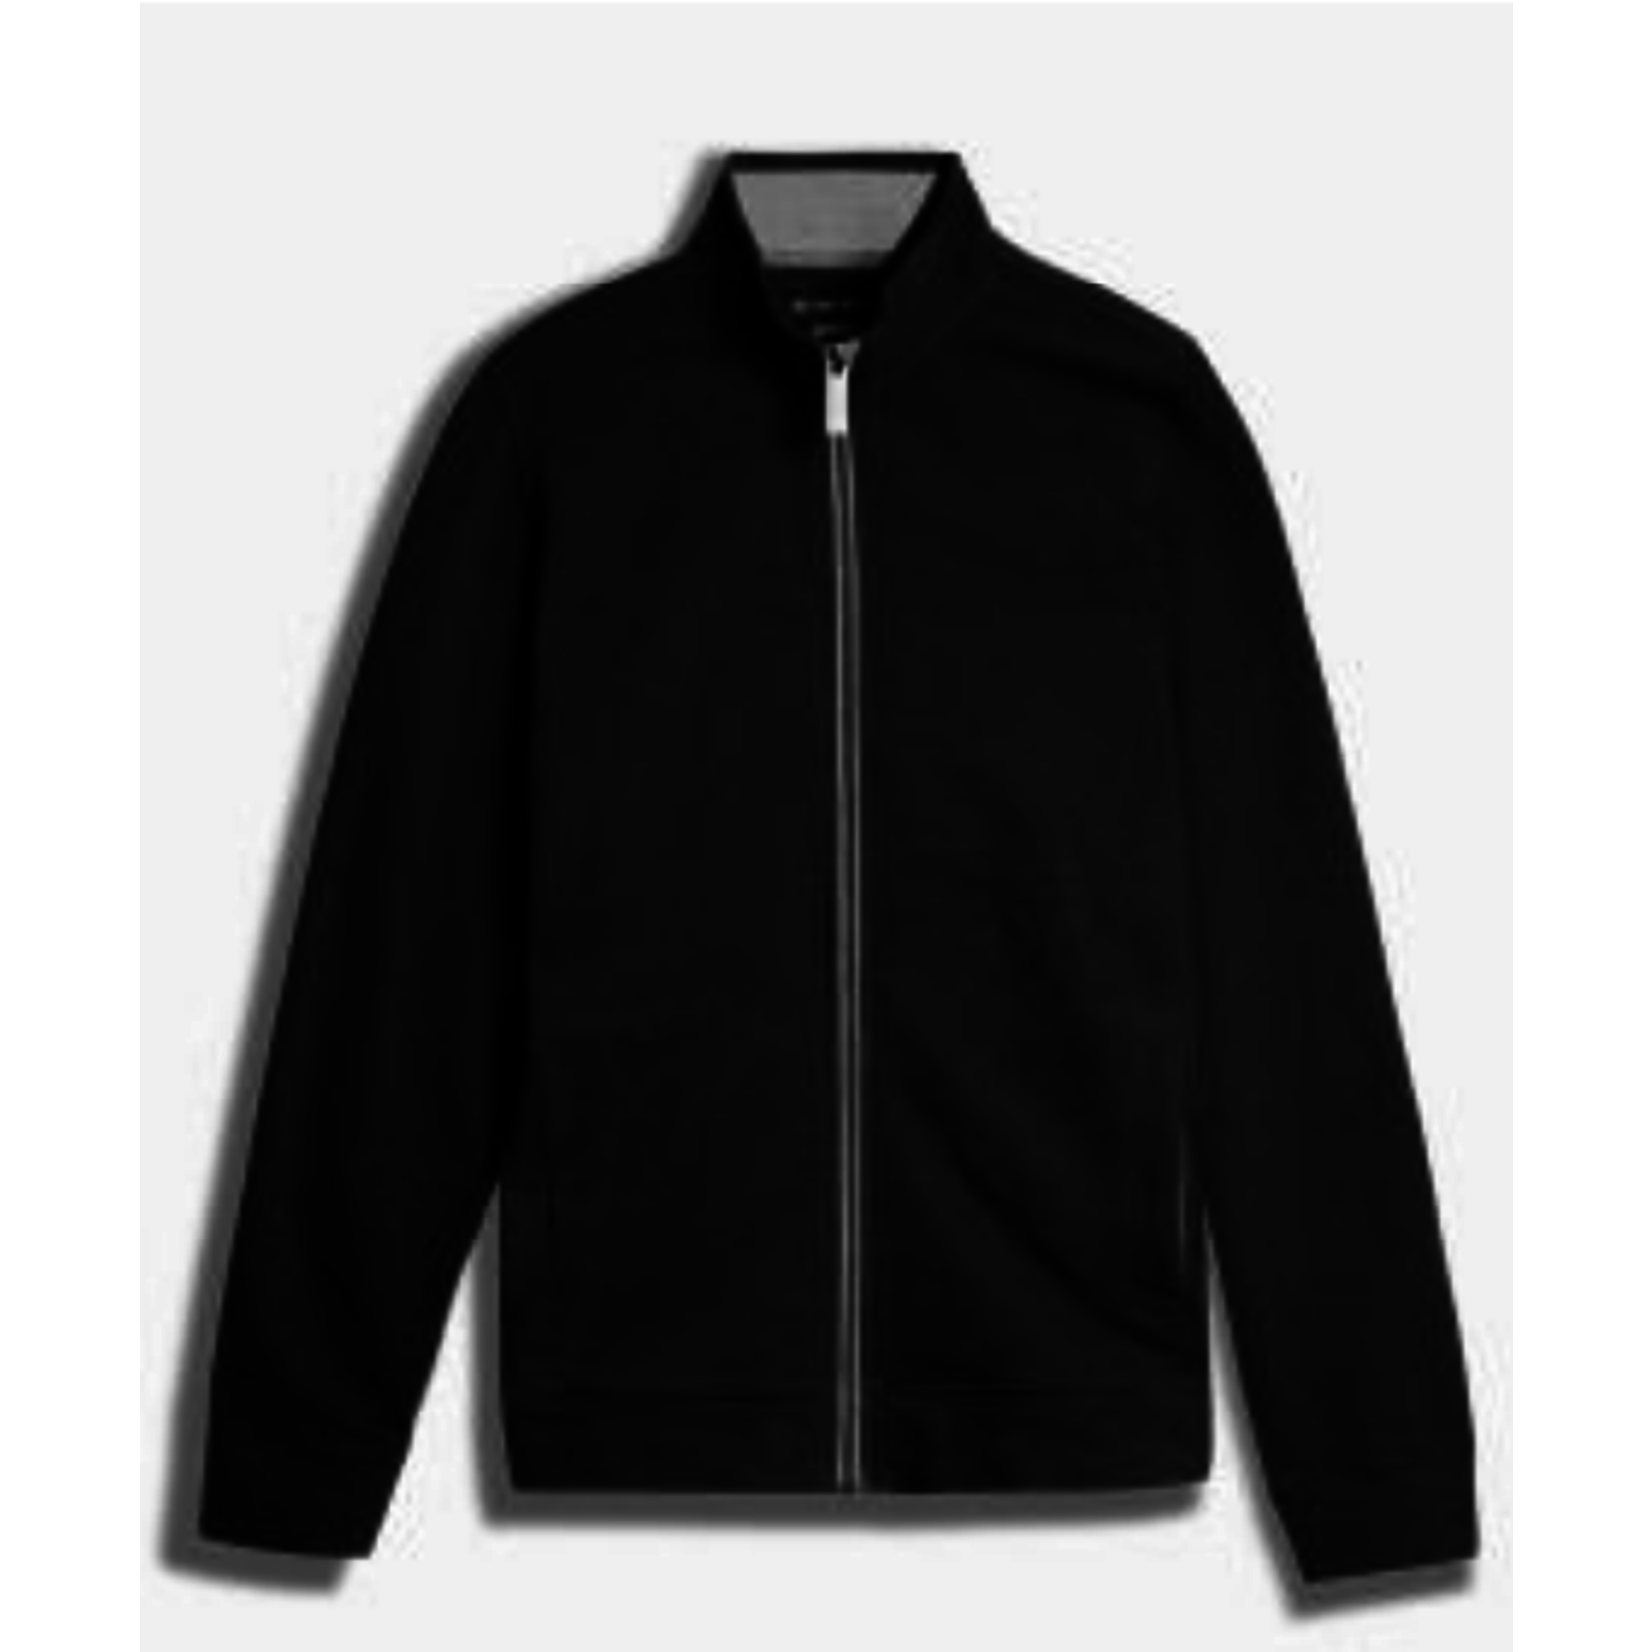 Black Bull Black Bull full zip sweater/jacket